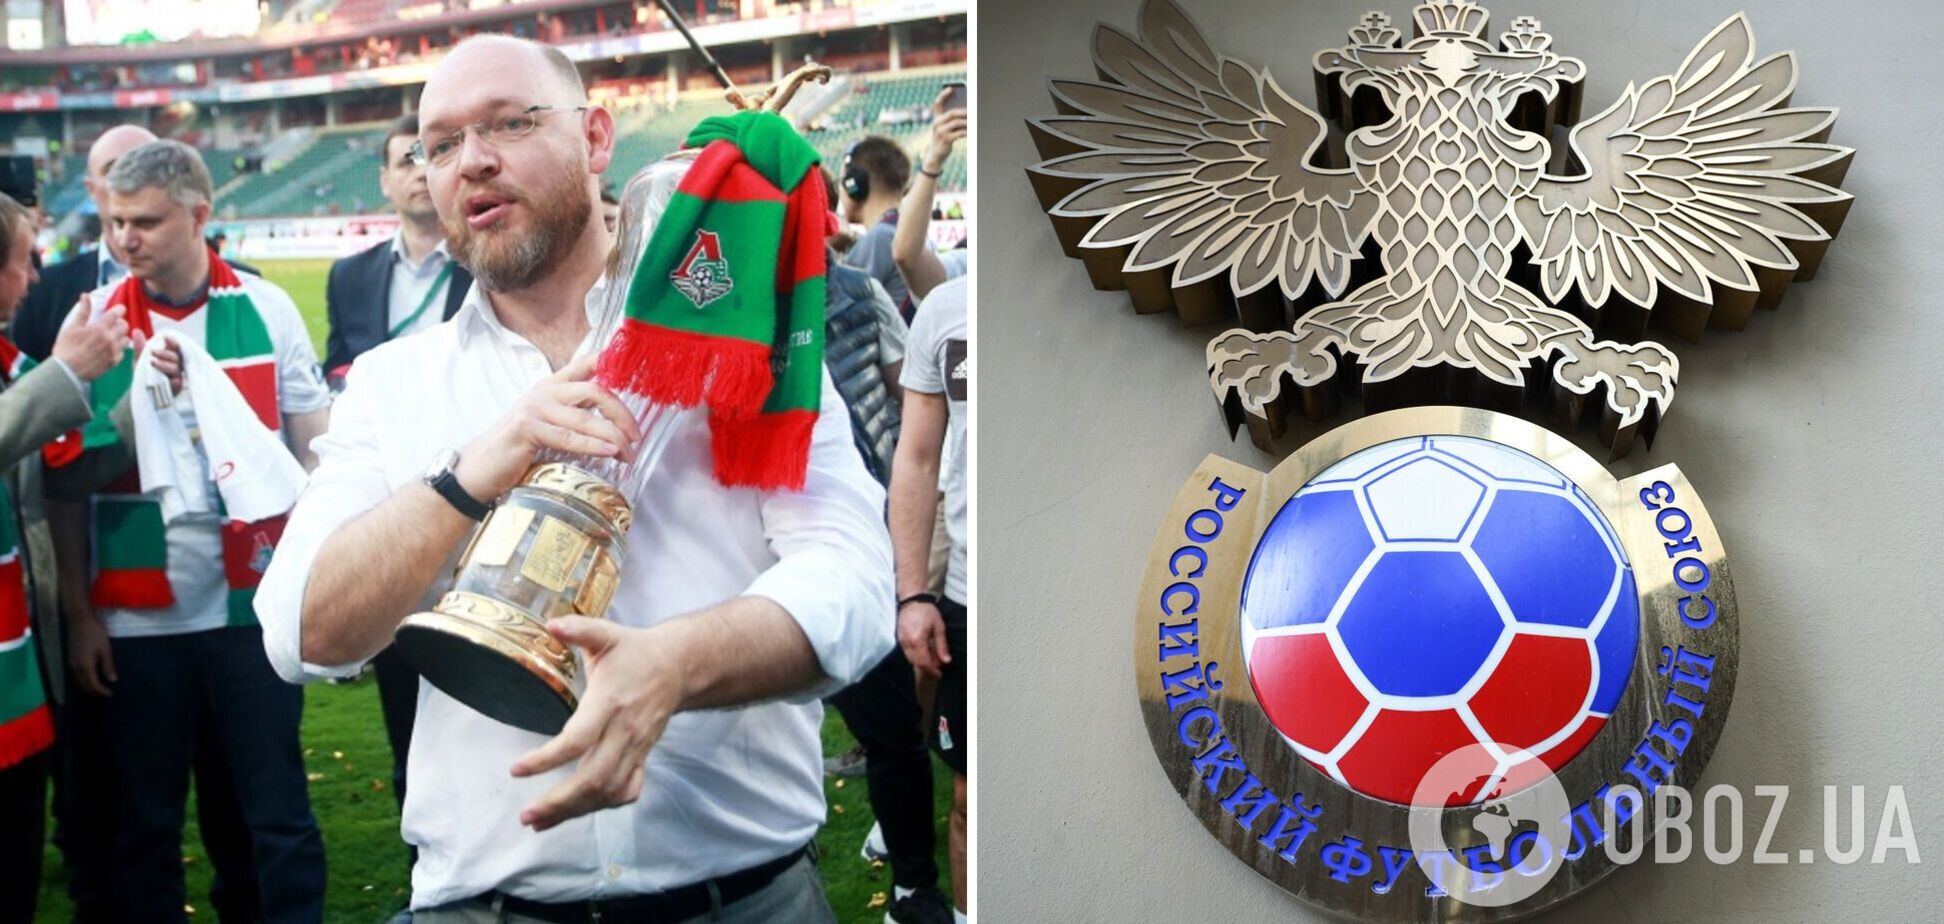 'Узбекистан и Кыргызстан вызовут большой интерес': в российском футболе снова заговорили о переходе в Азию